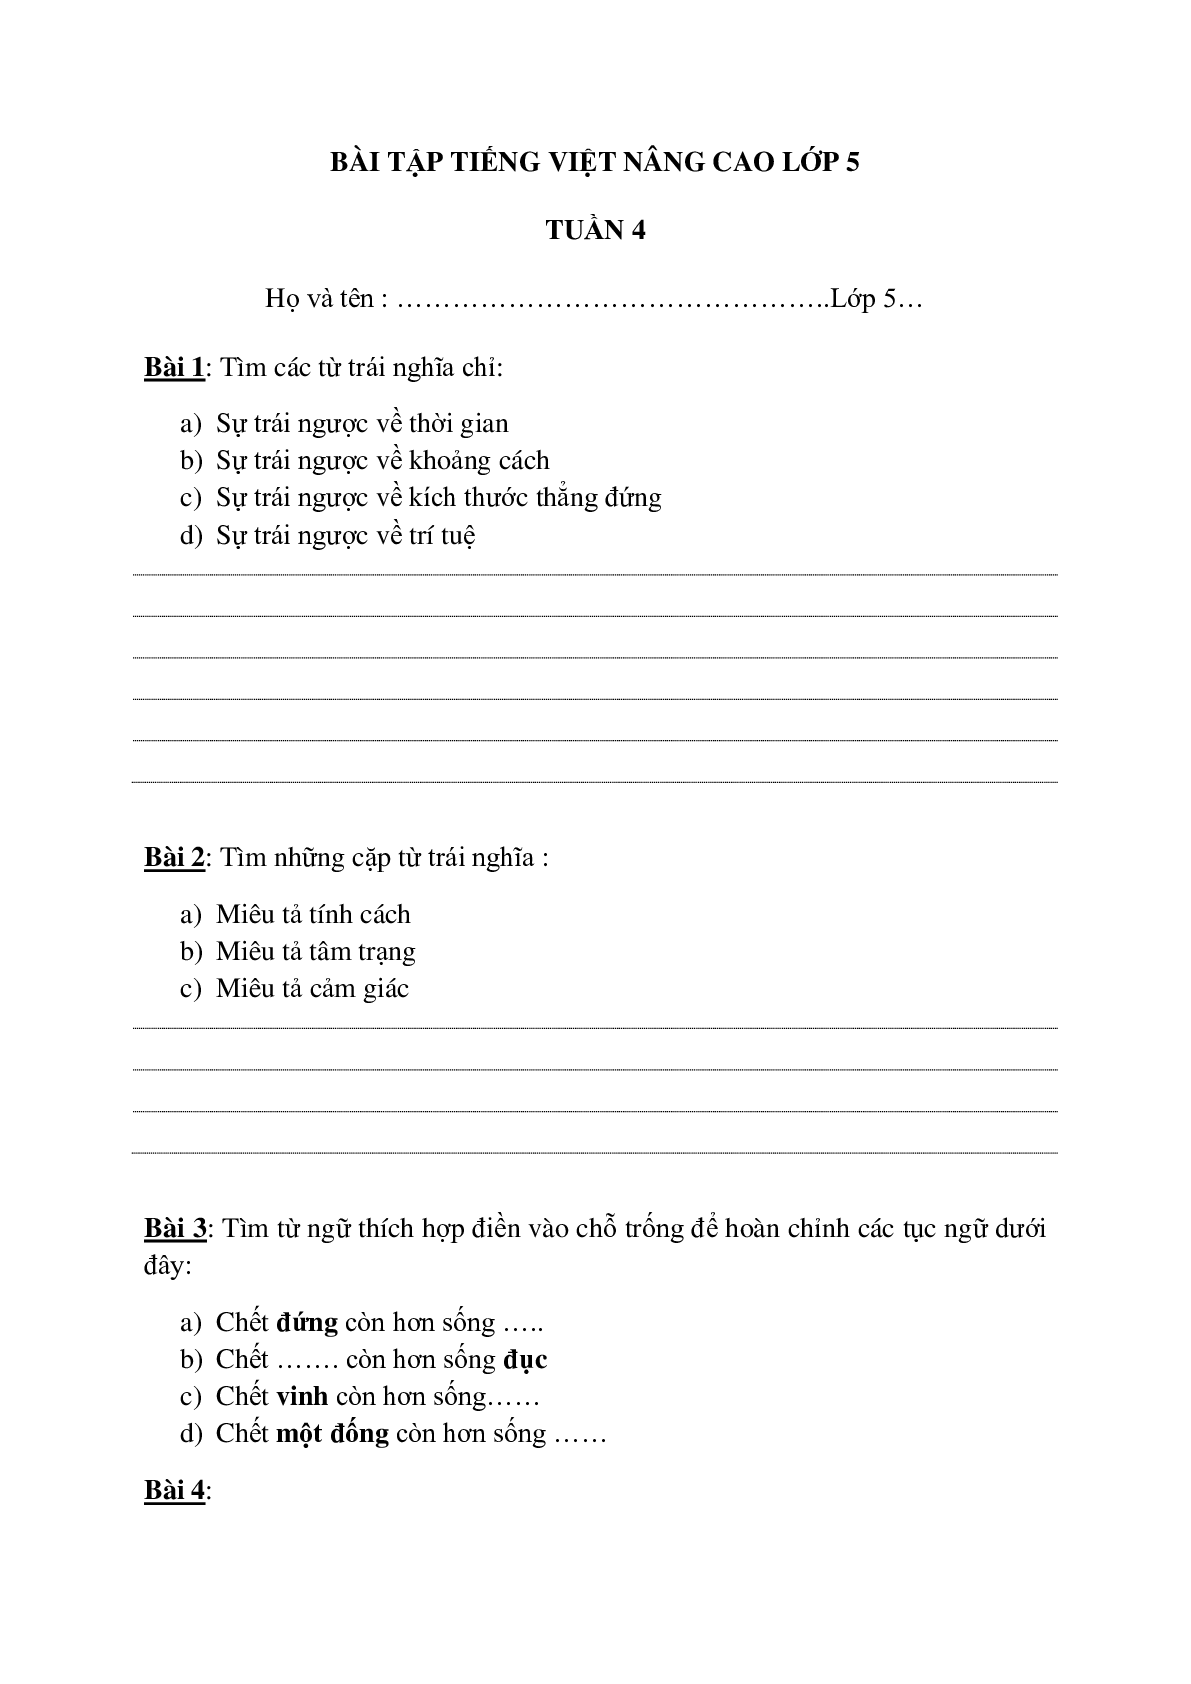 Bài tập nâng cao môn Tiếng Việt lớp 5 (trang 10)